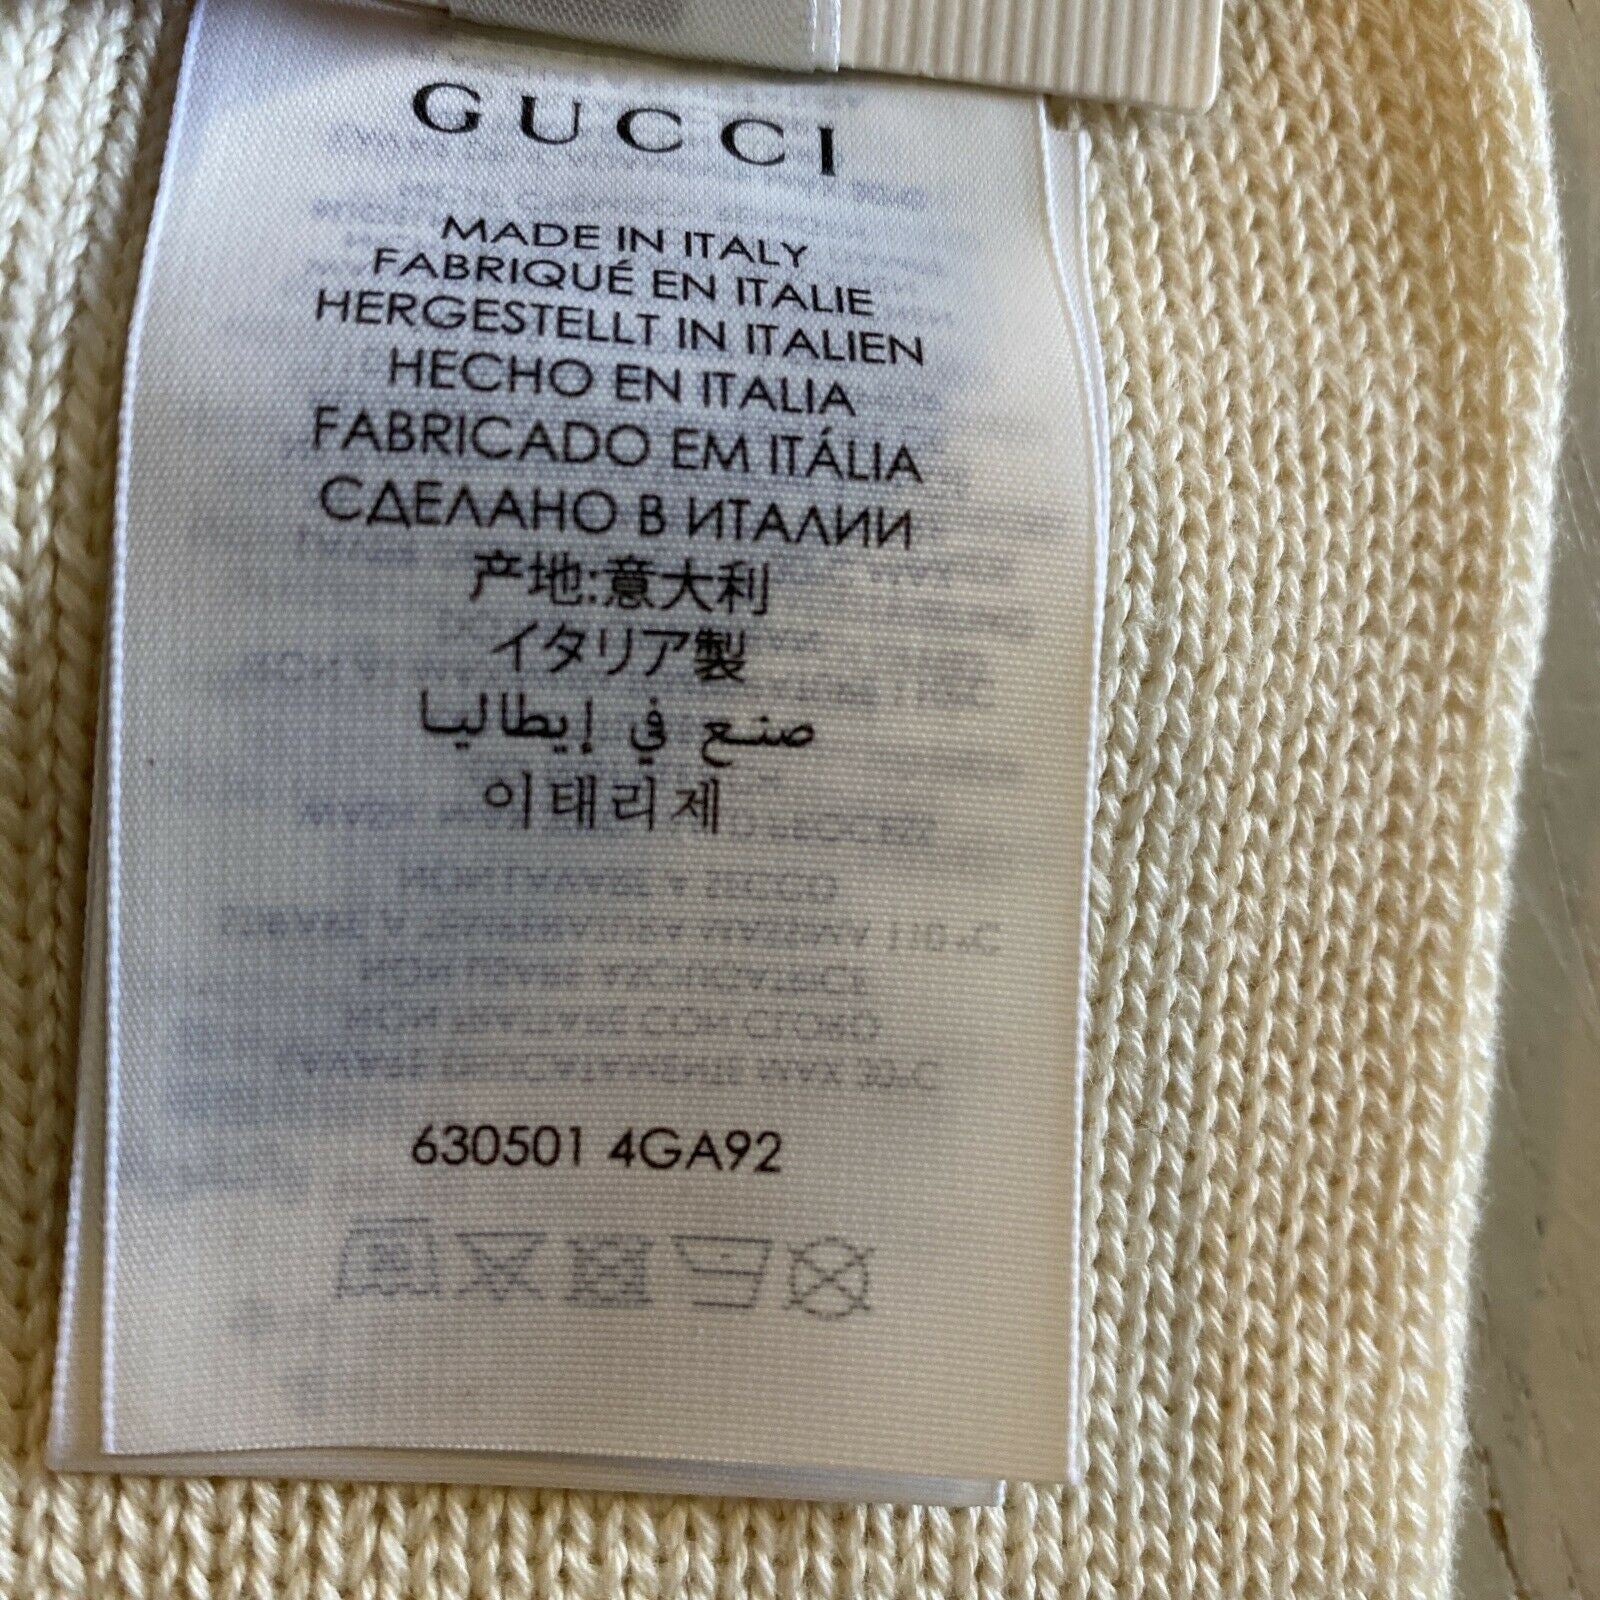 Мужские хлопковые носки NWT Gucci с монограммой GG, цвет слоновой кости, размер M, Италия